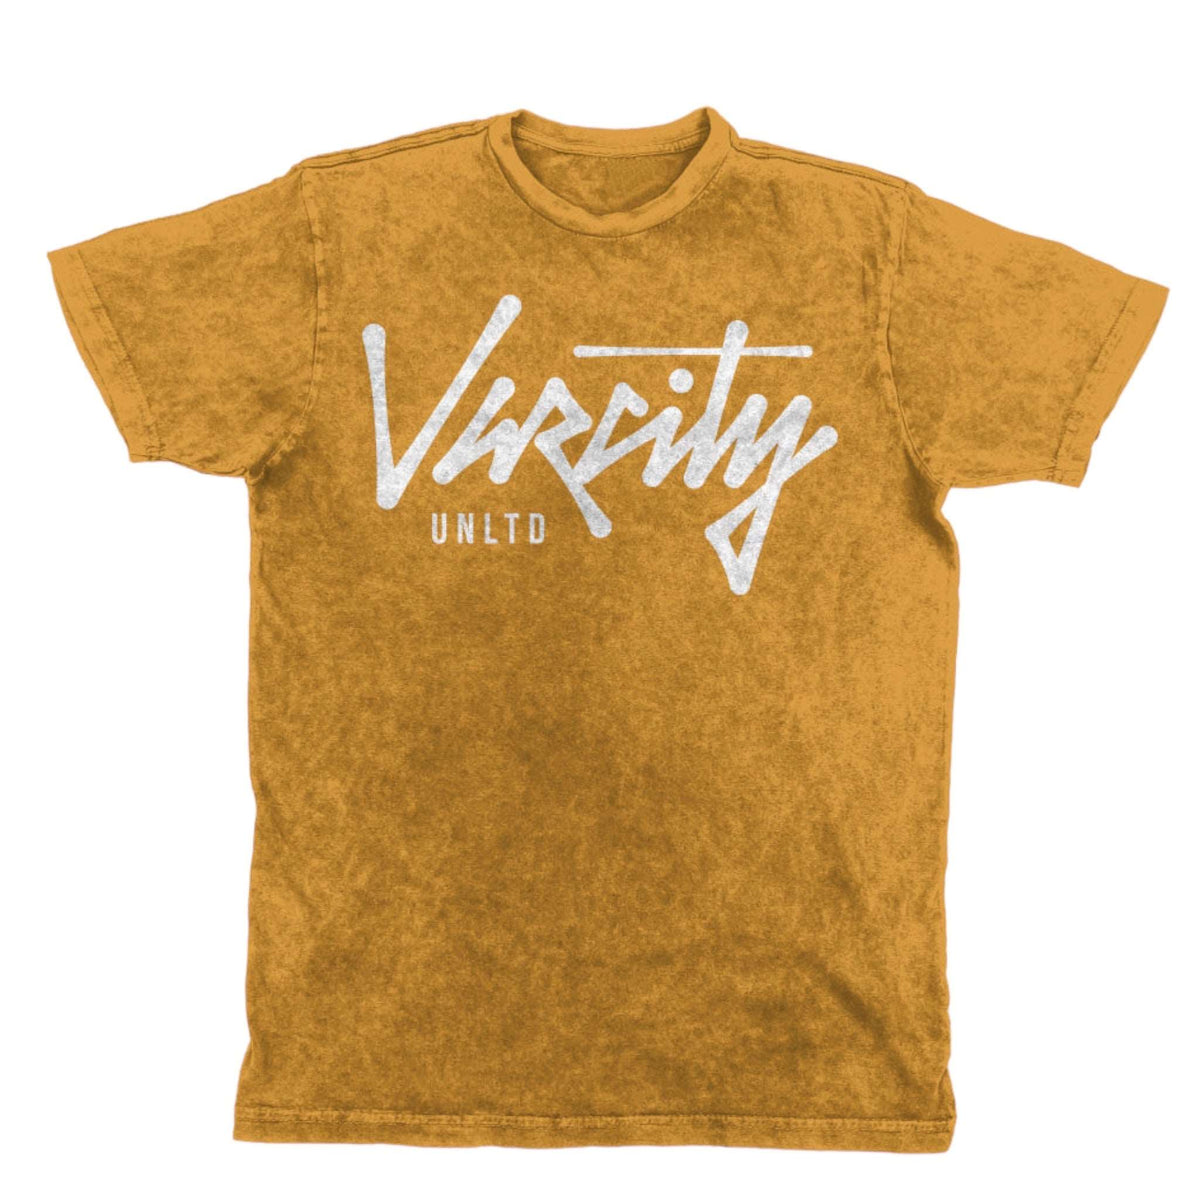 Varcity Unltd ® Vintage Grunge Style Mustard tee